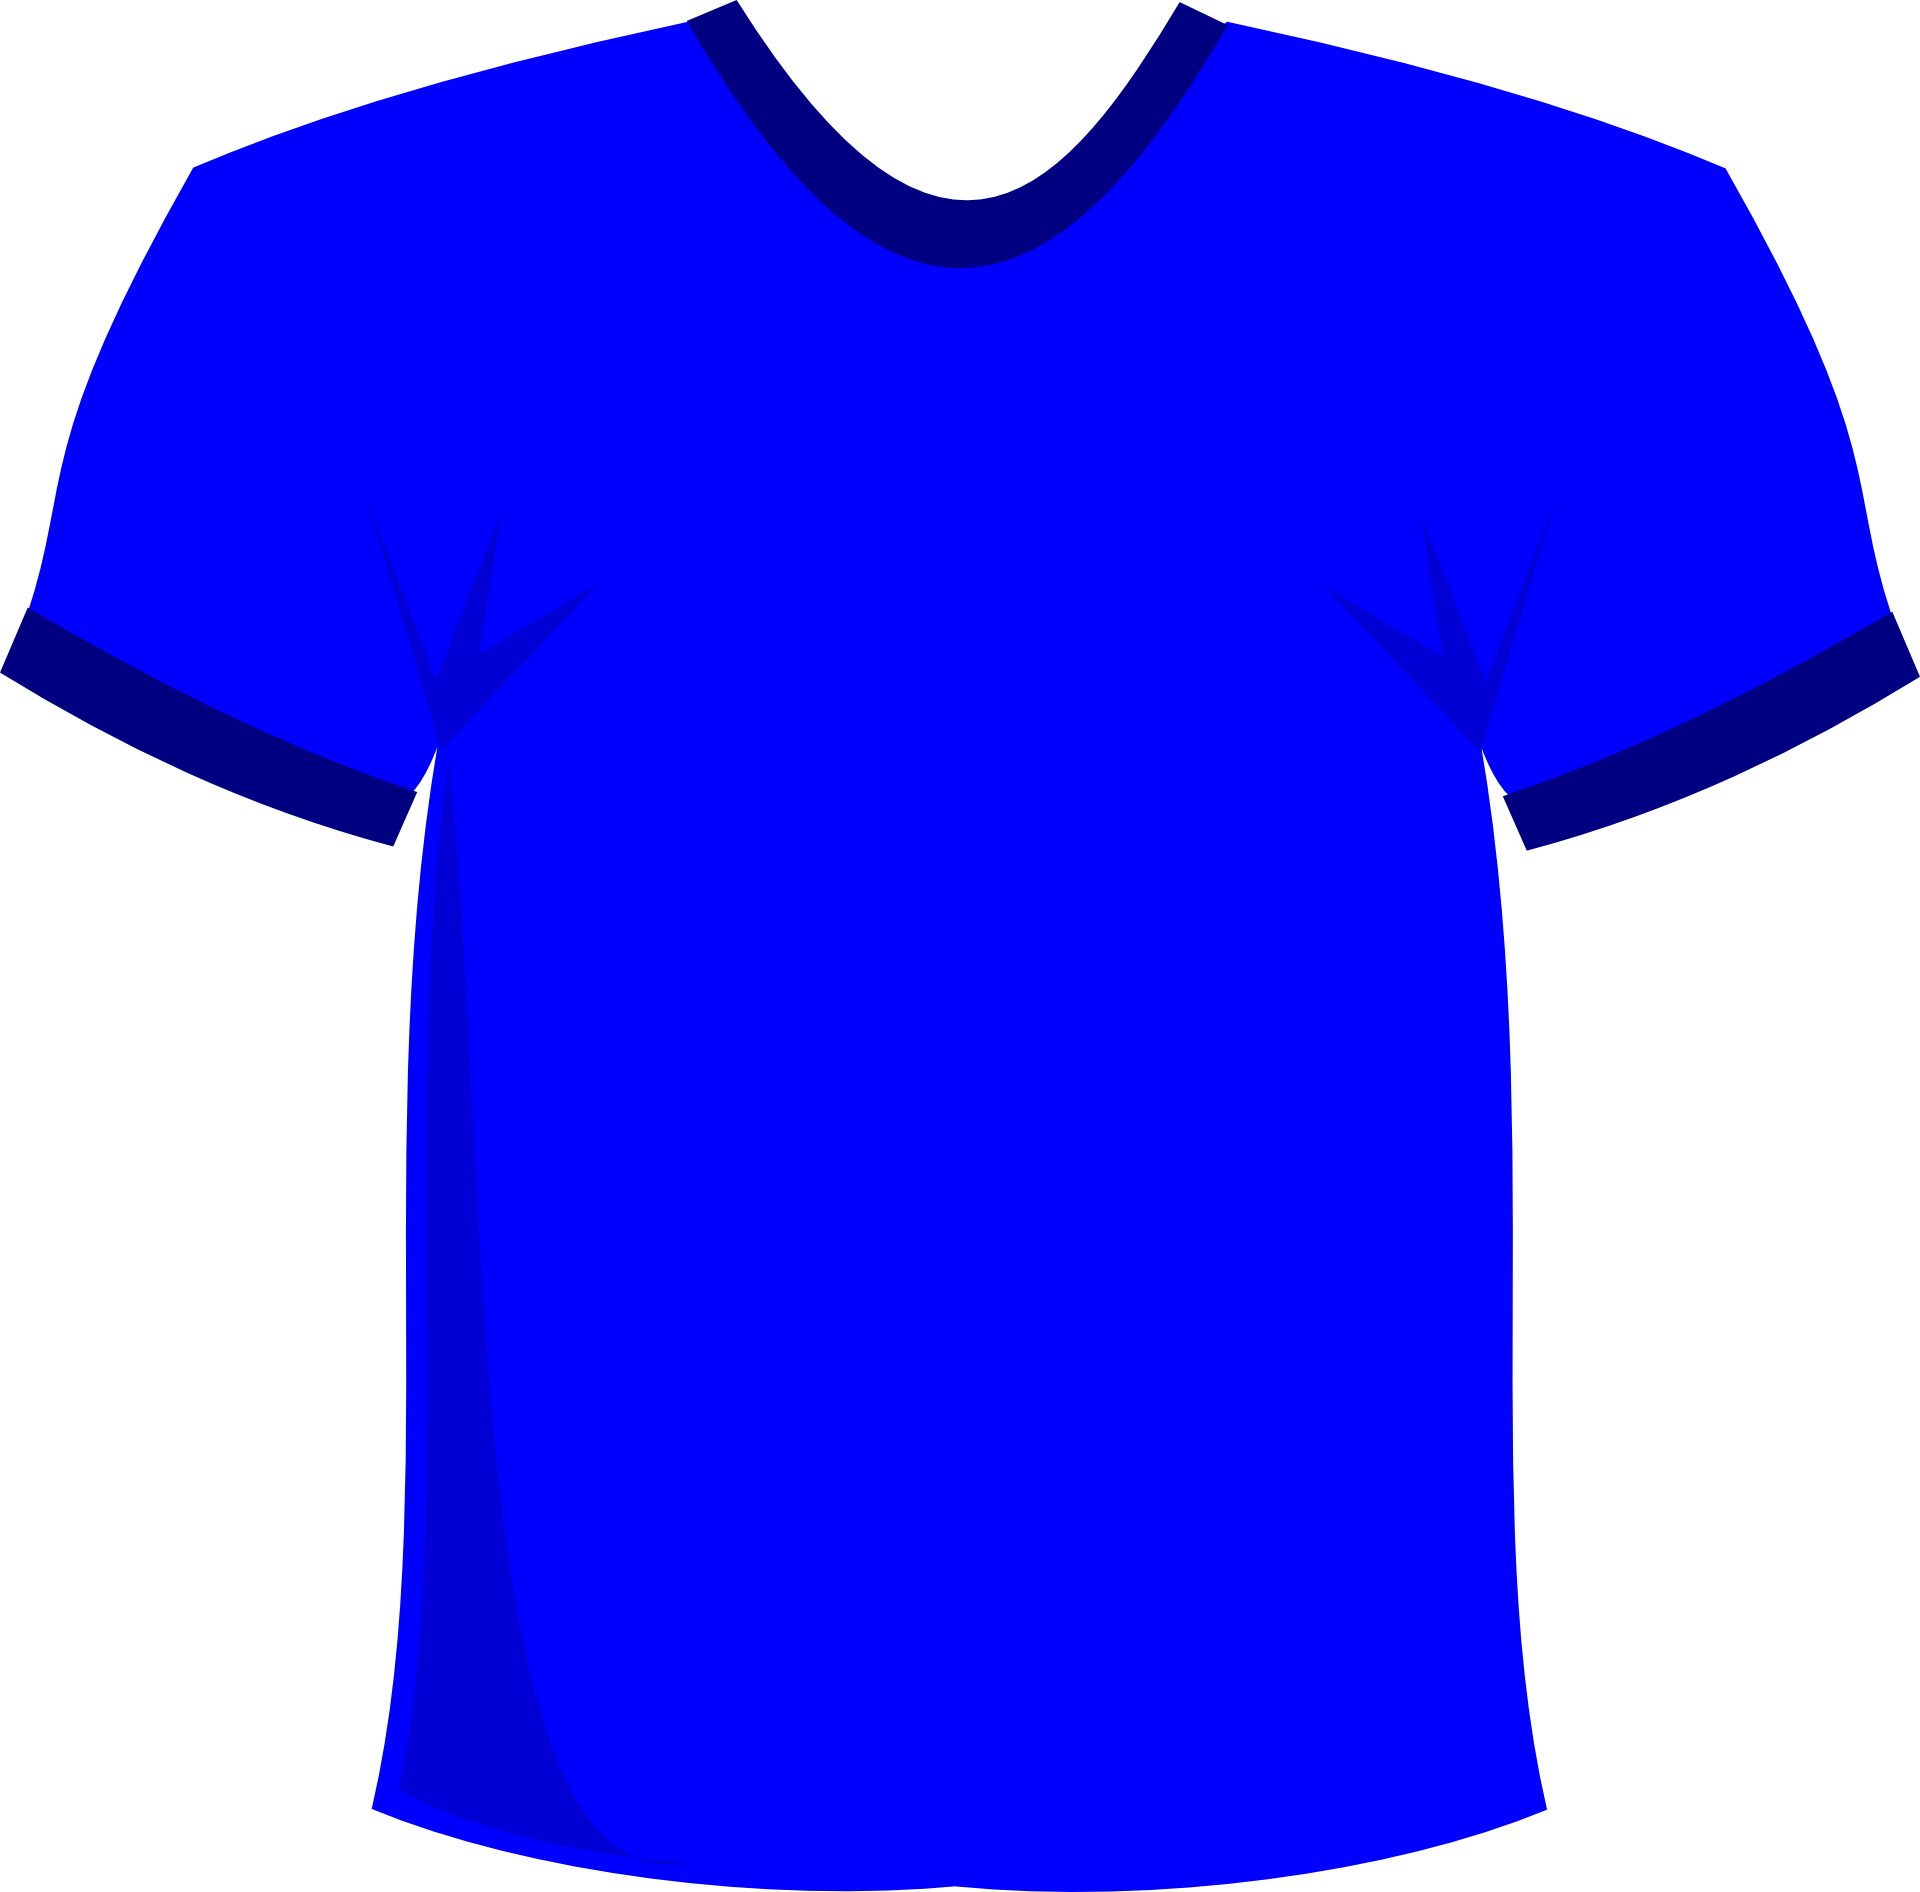 Blue T-Shirt Template